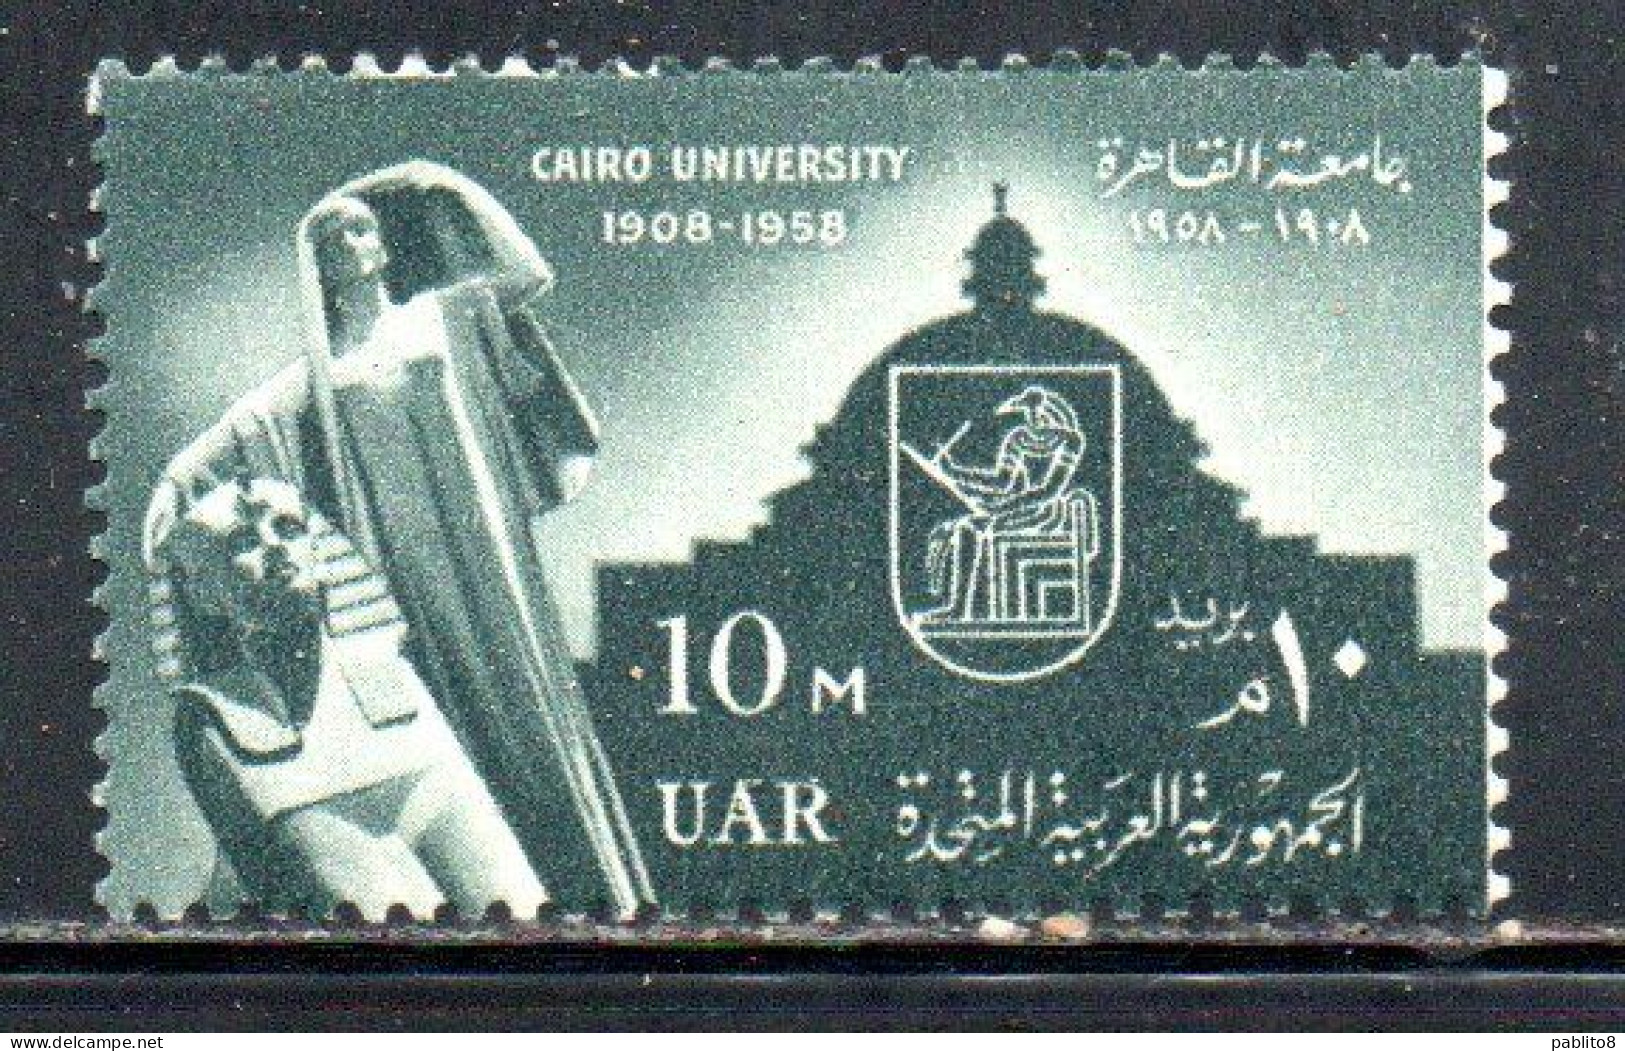 UAR EGYPT EGITTO 1958 50th ANNIVERSARY OF CAIRO UNIVERSITY 10m  MNH - Nuovi